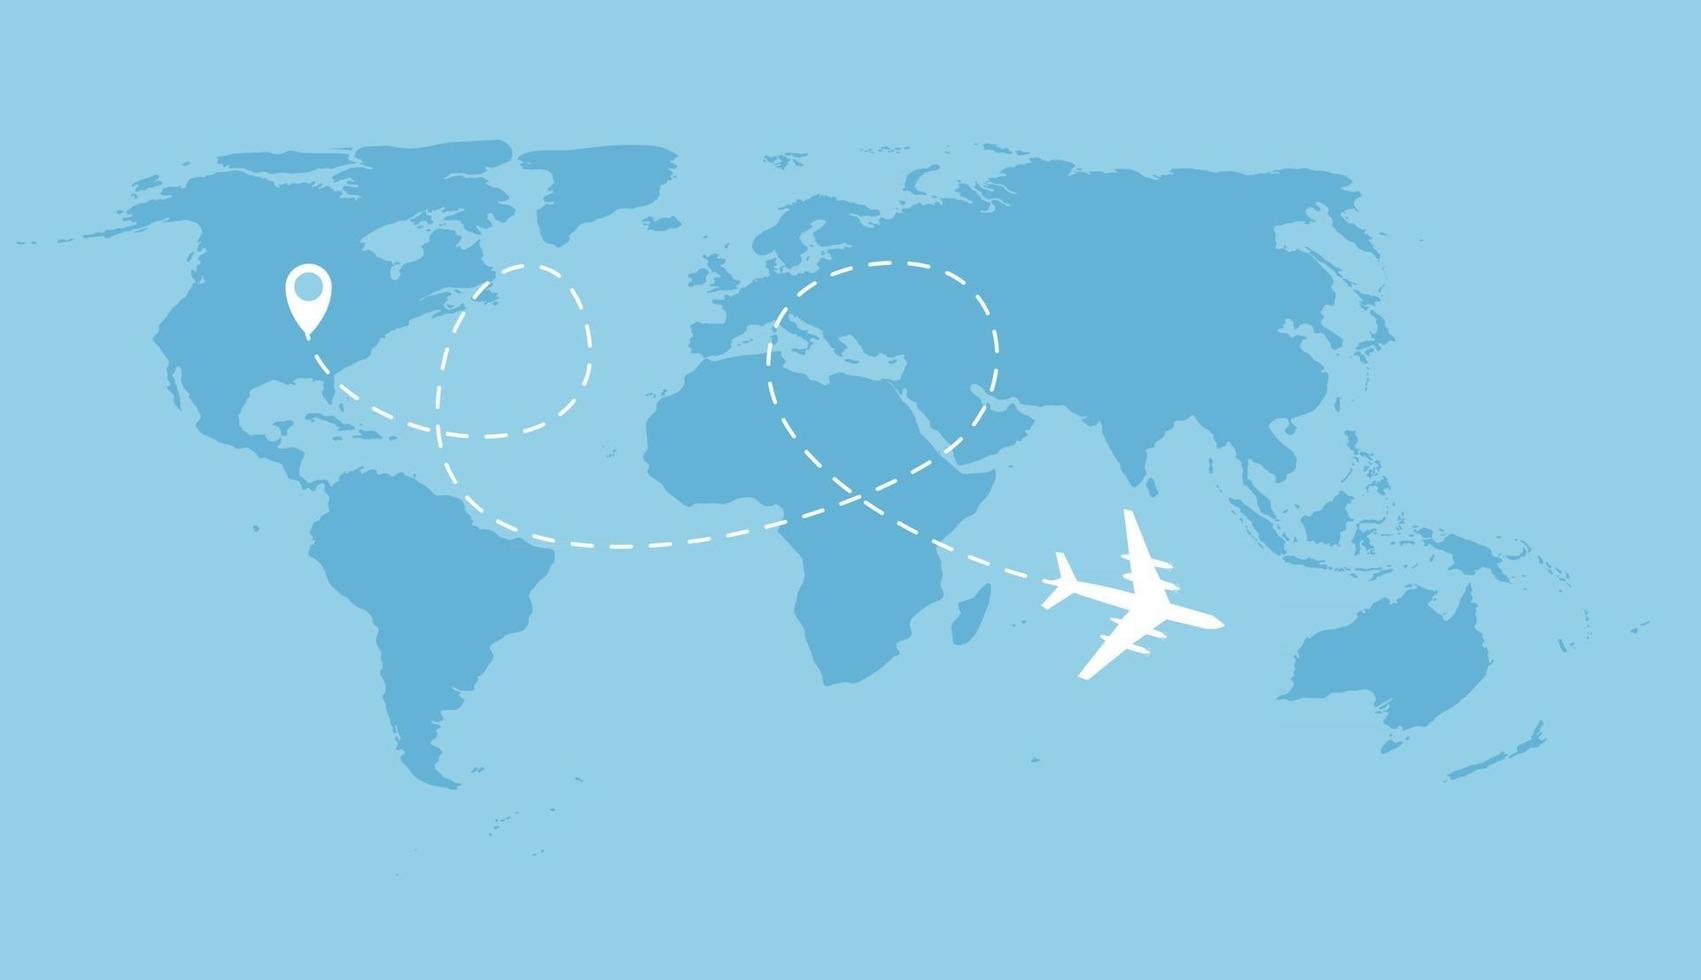 flygplan prickad flygbakgrund ovanför världskartan. vektor illustration